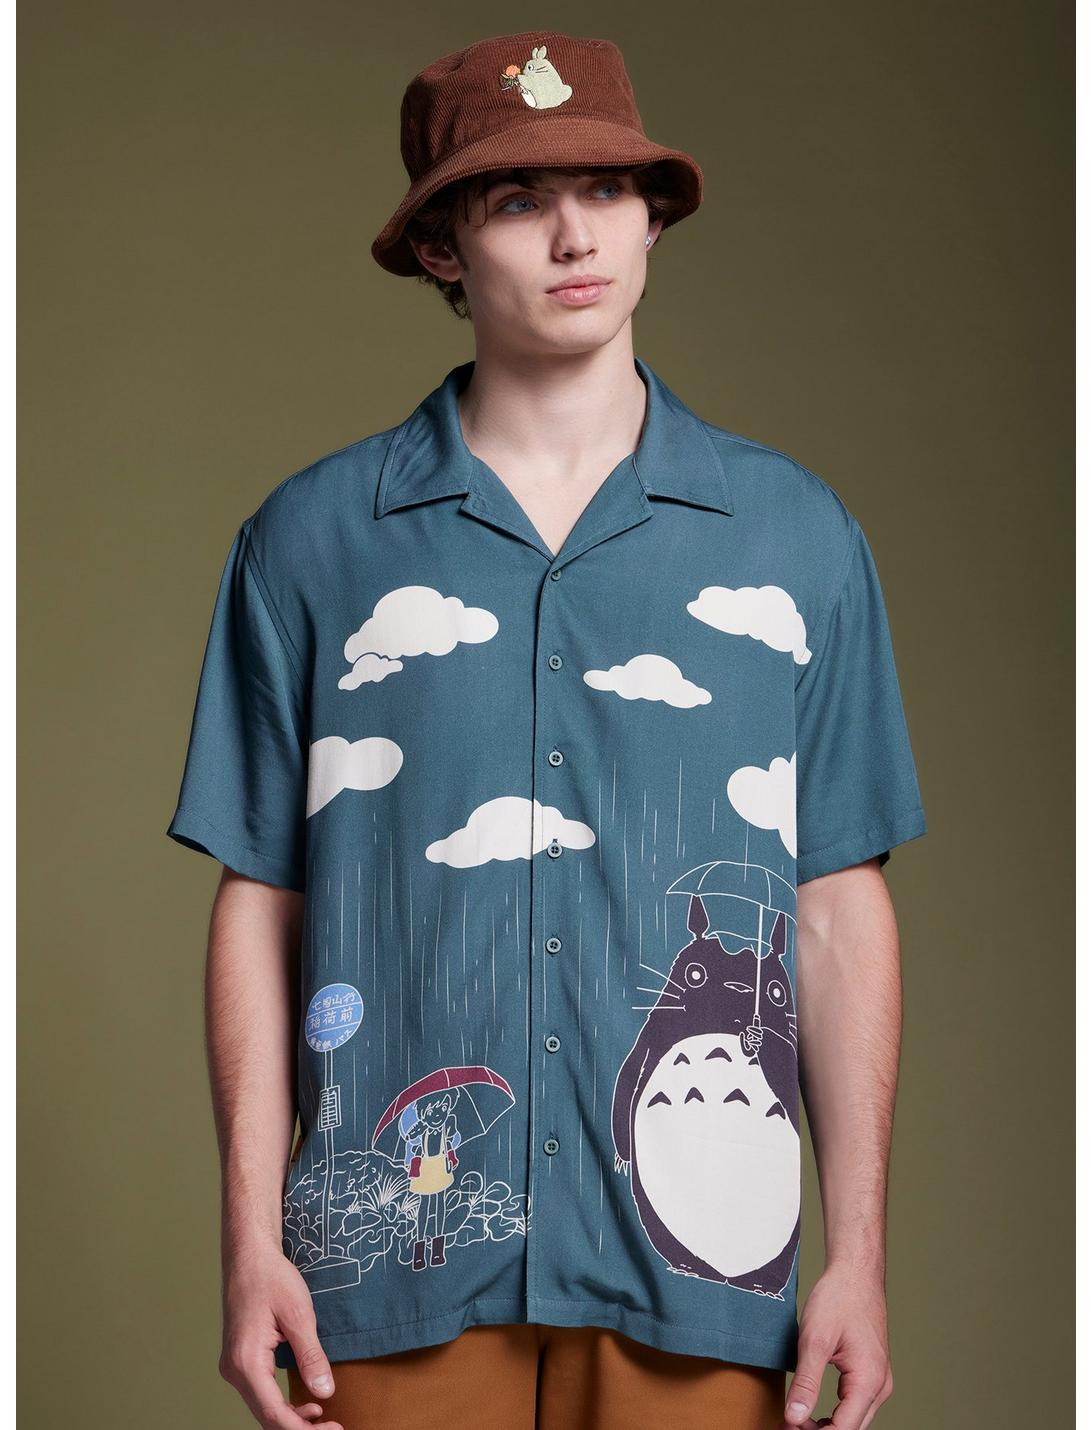 Camisa Studio Ghibli Totoro